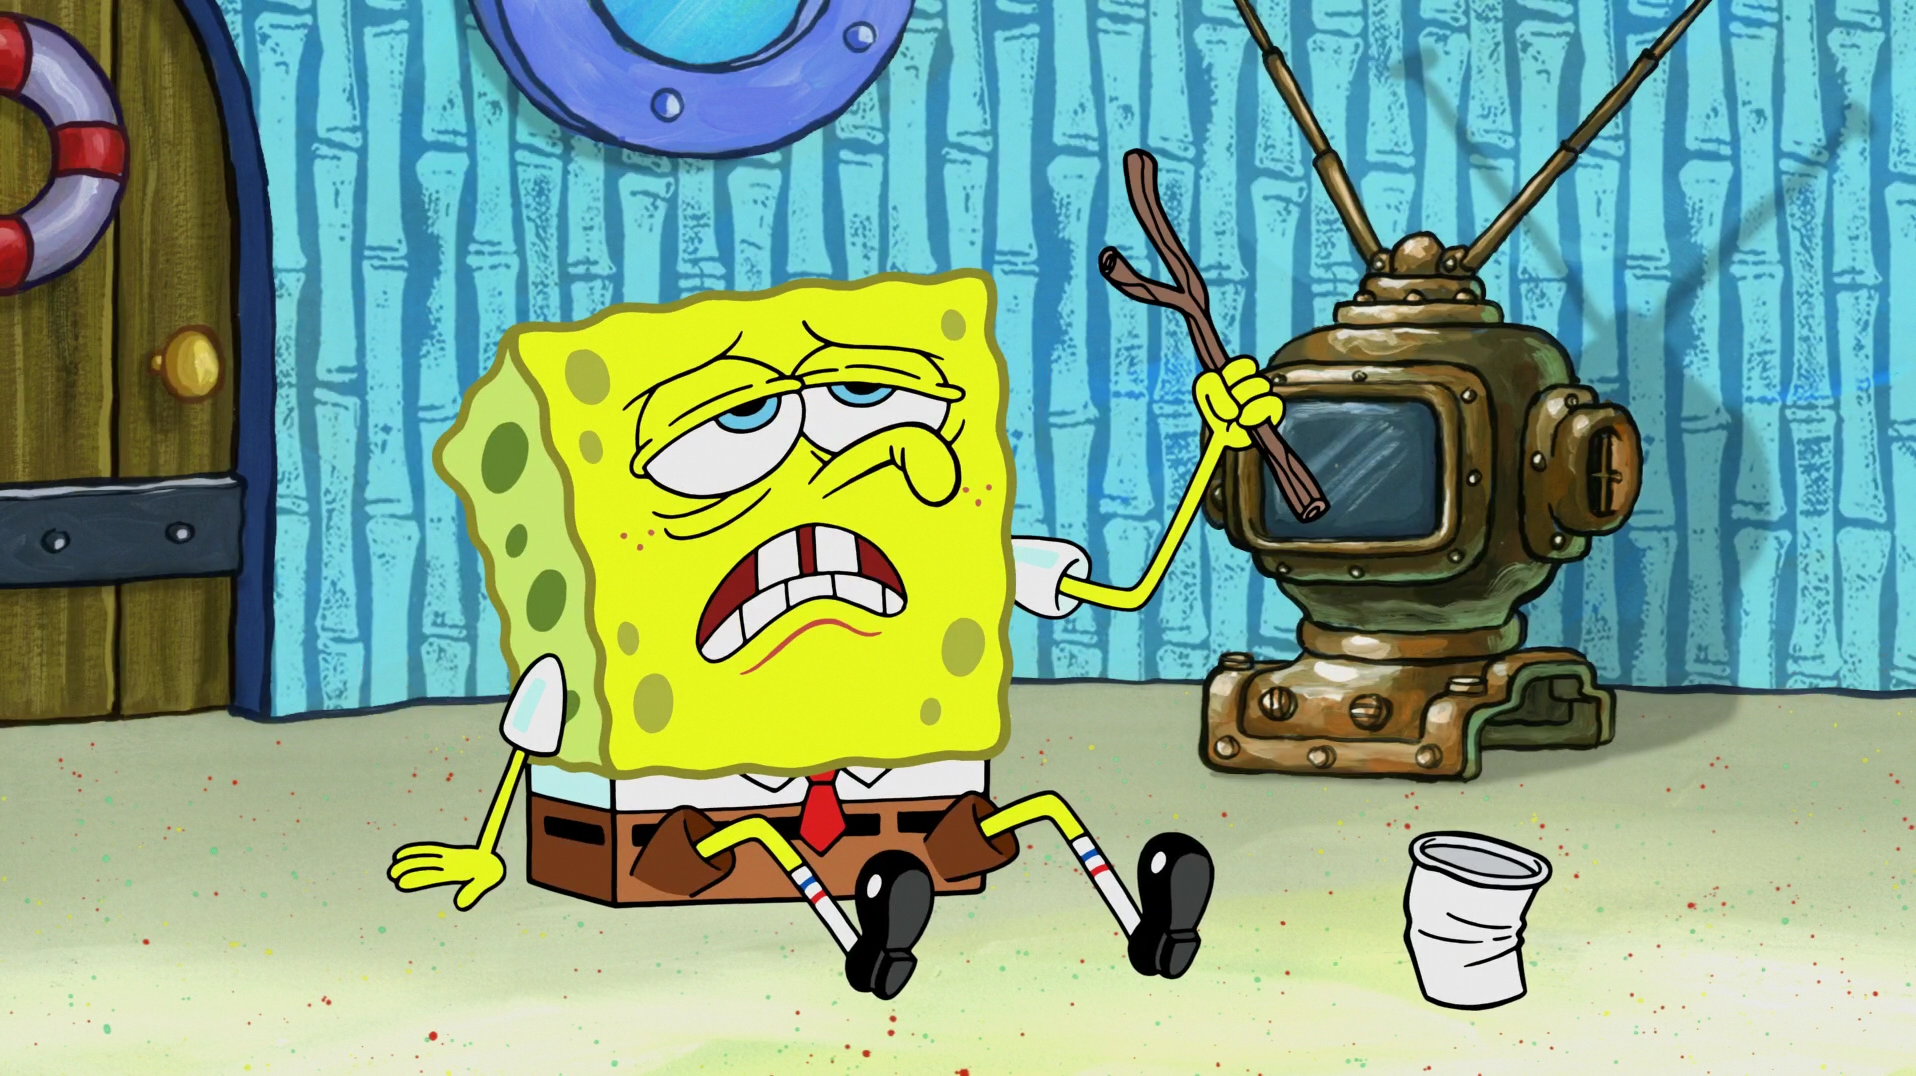 Губка боб квадратные губки 12. Spongebob квадратные штаны Seasons. Губка Боб квадратные штаны 2=2.